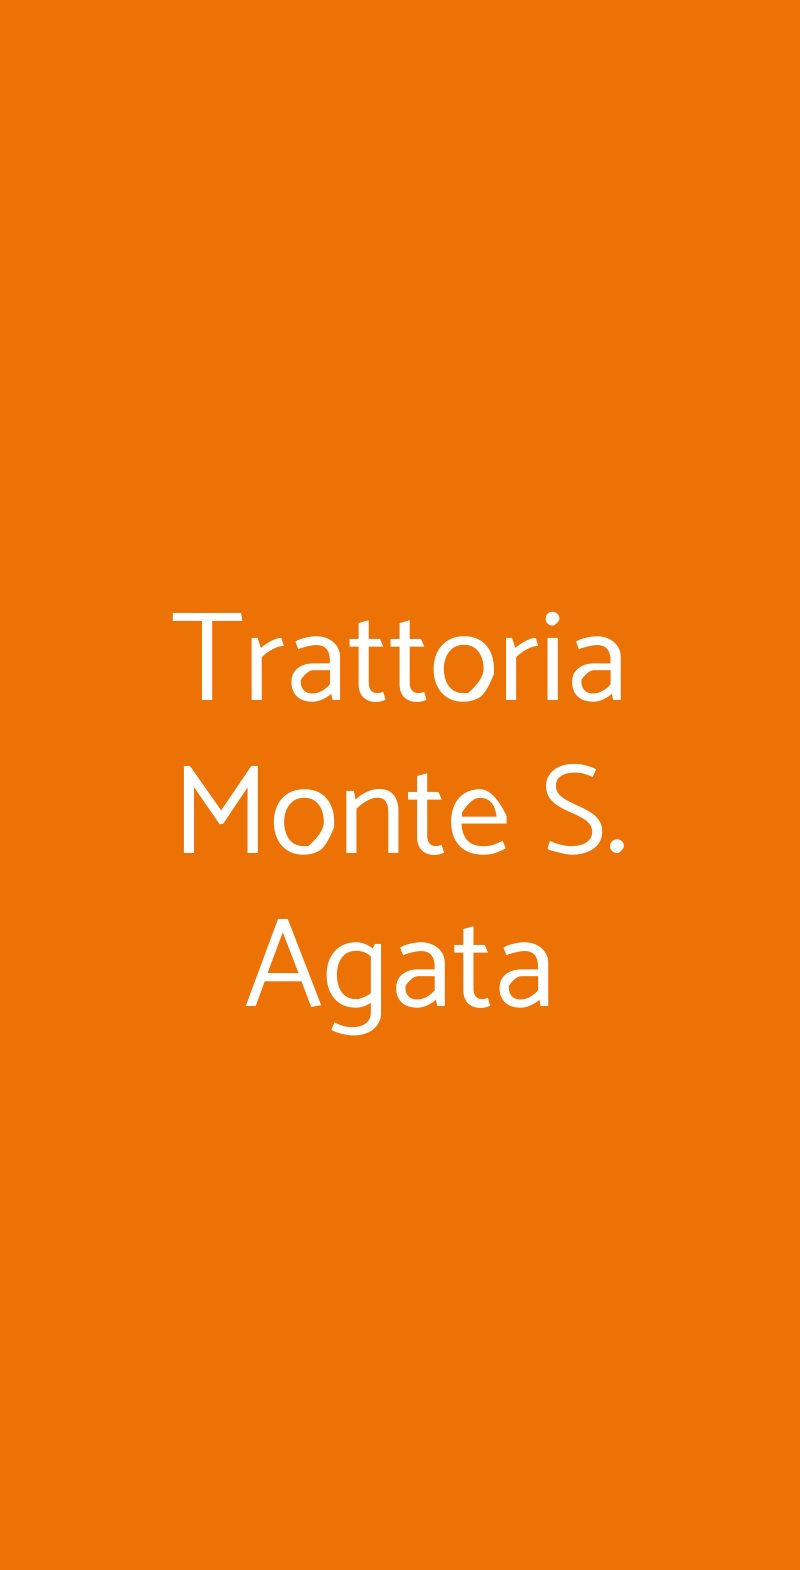 Trattoria Monte S. Agata Catania menù 1 pagina